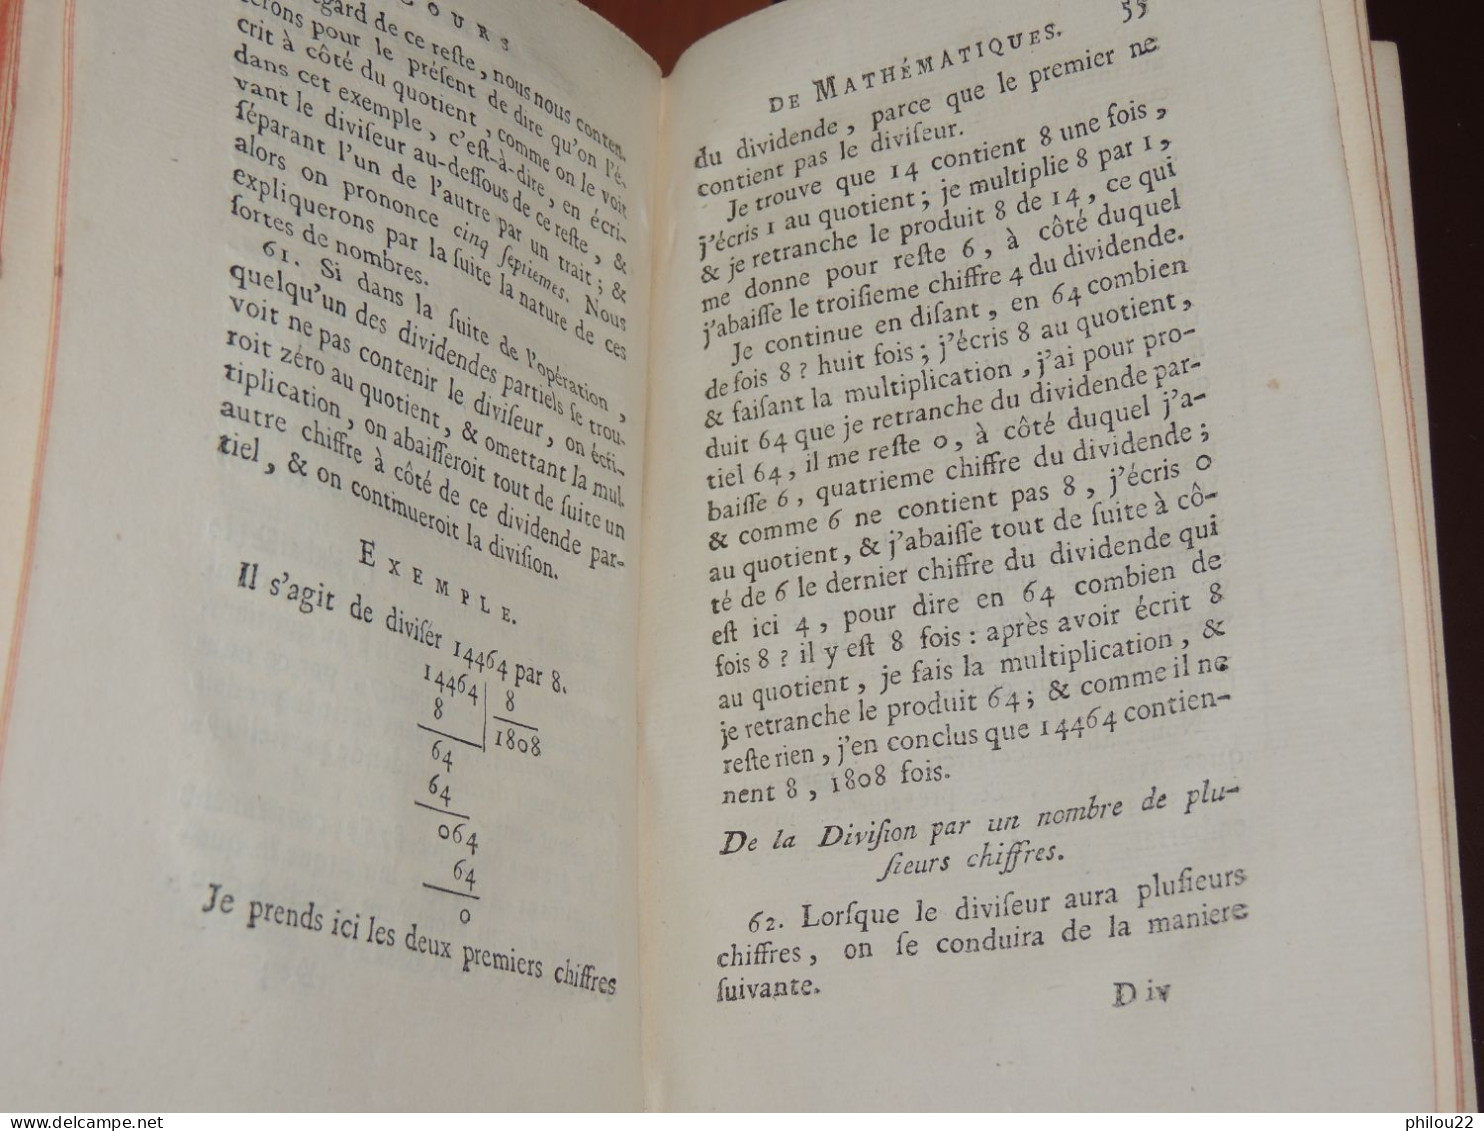 Cours De Mathématiques, à L'usage Des Gardes Du Pavillon Et De La Marine  1775 - 1701-1800